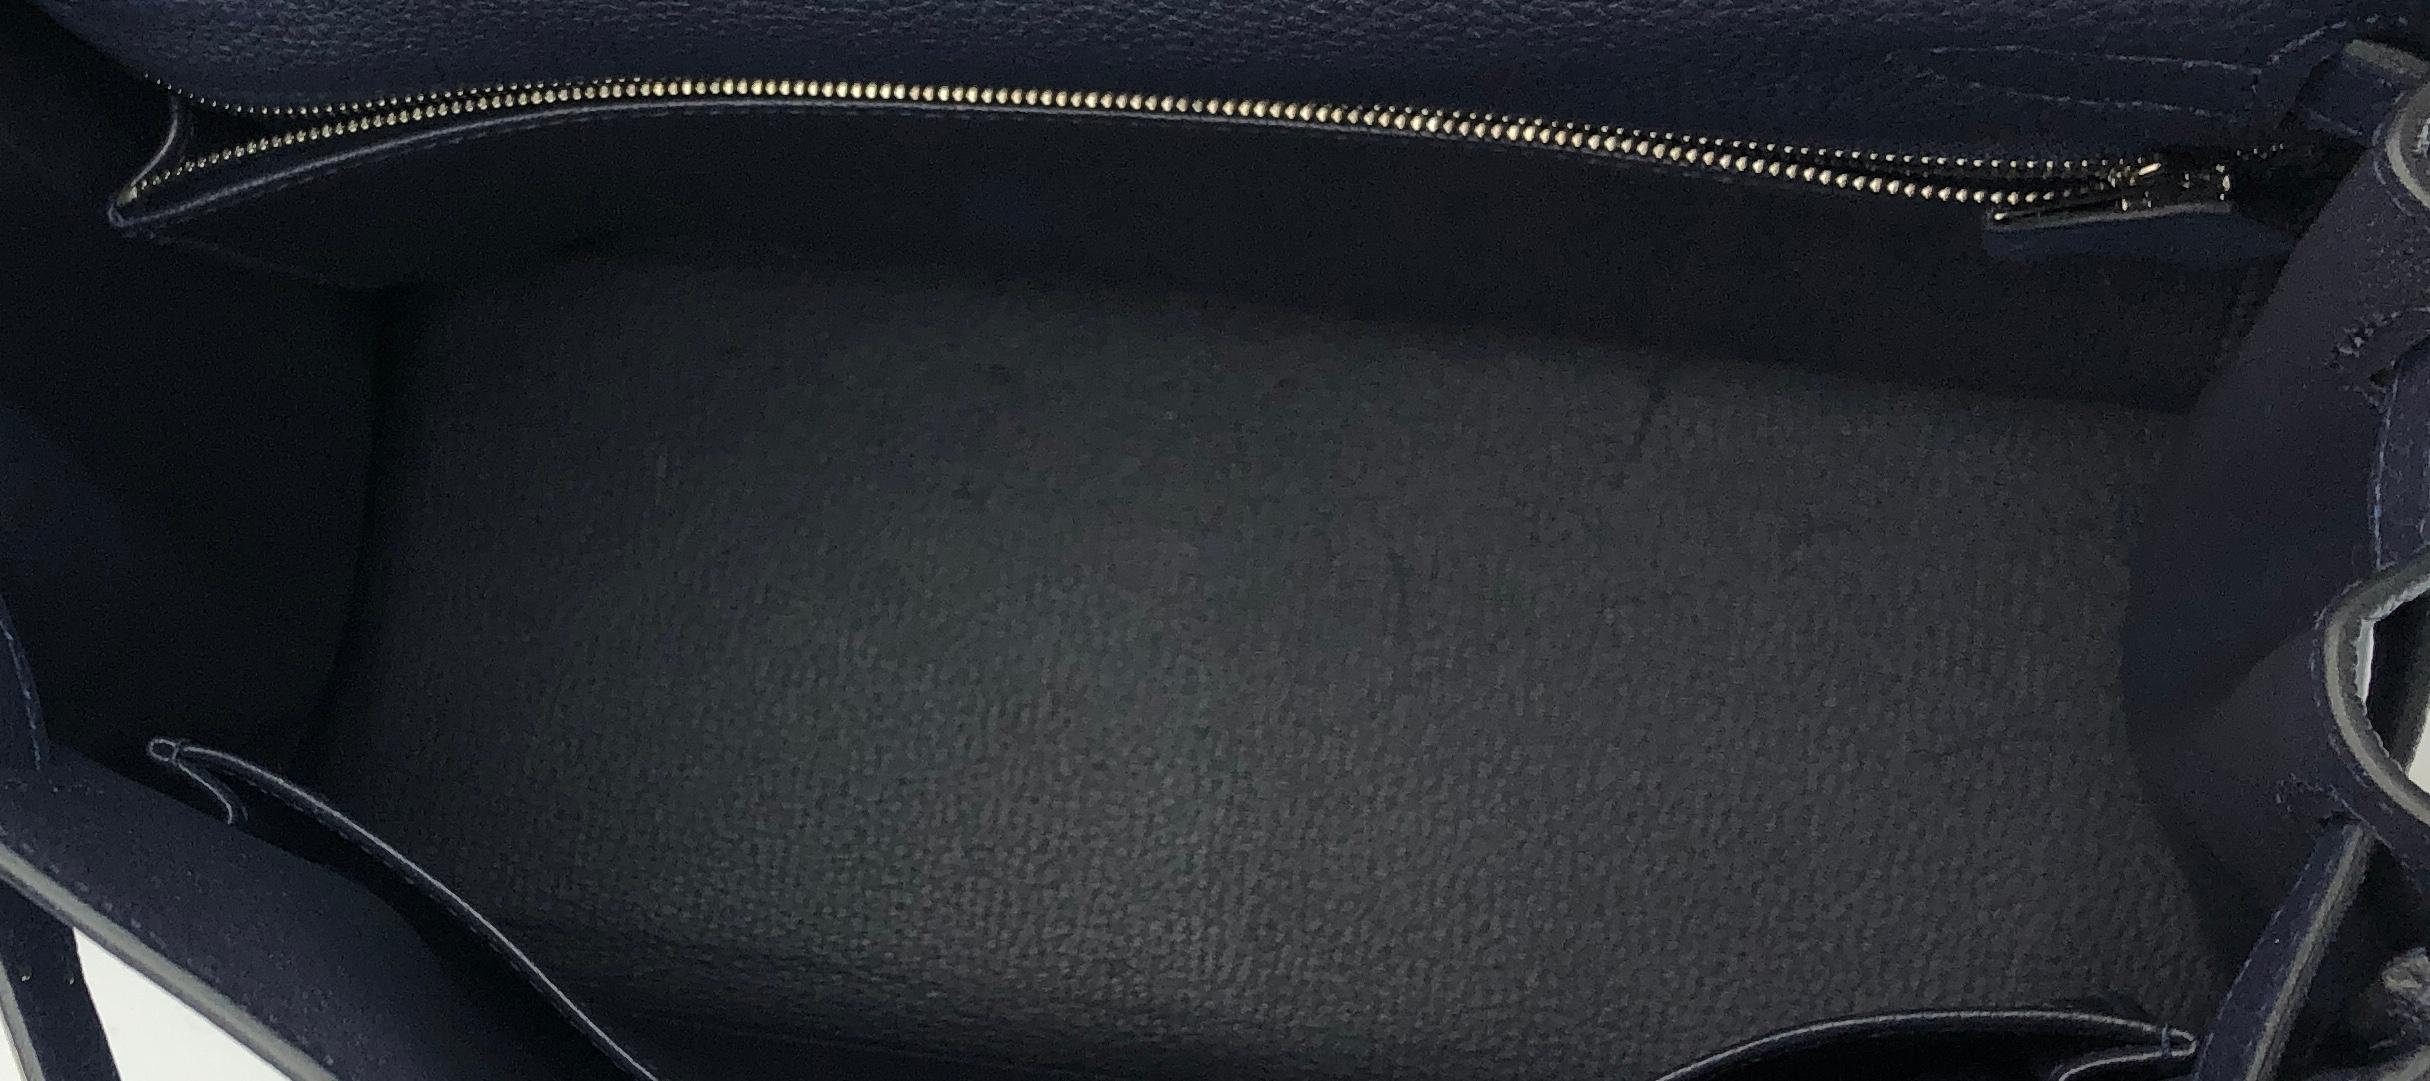 Hermes Kelly 28 Bleu Nuit Navy Blue Leather Gold Hardware 2019 3